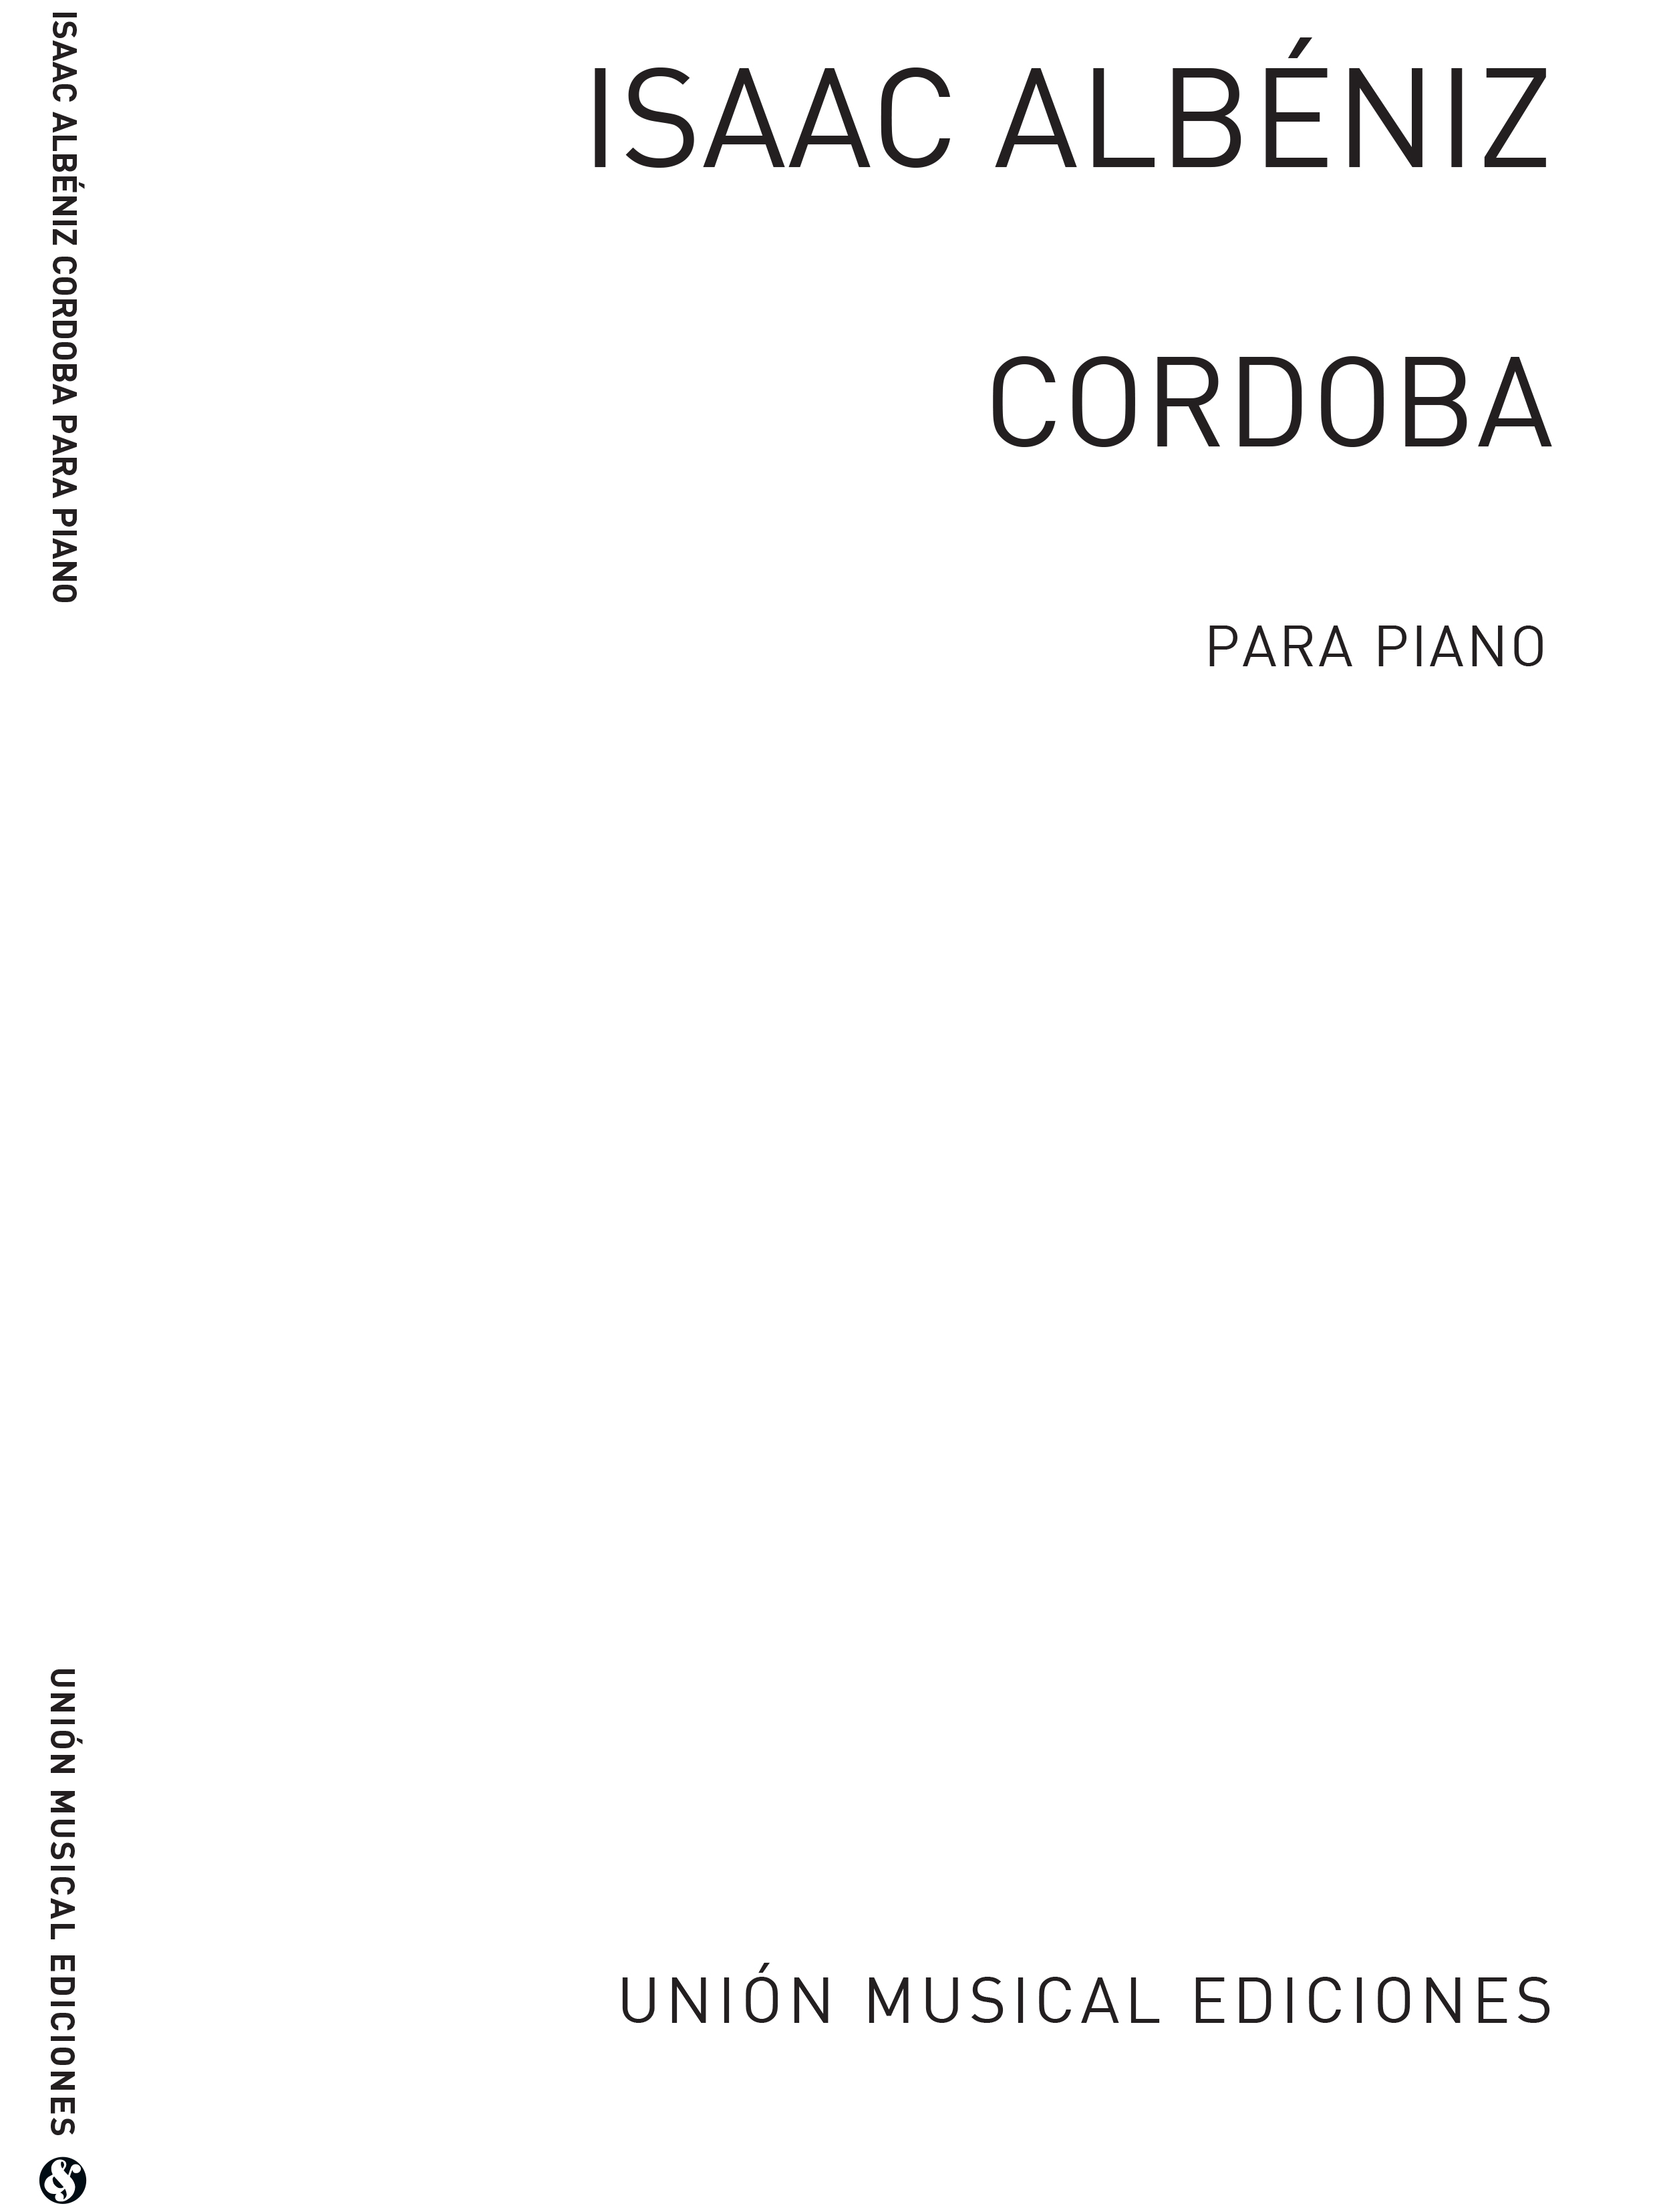 Albeniz: Cordoba Serenata (Biok) for Accordion